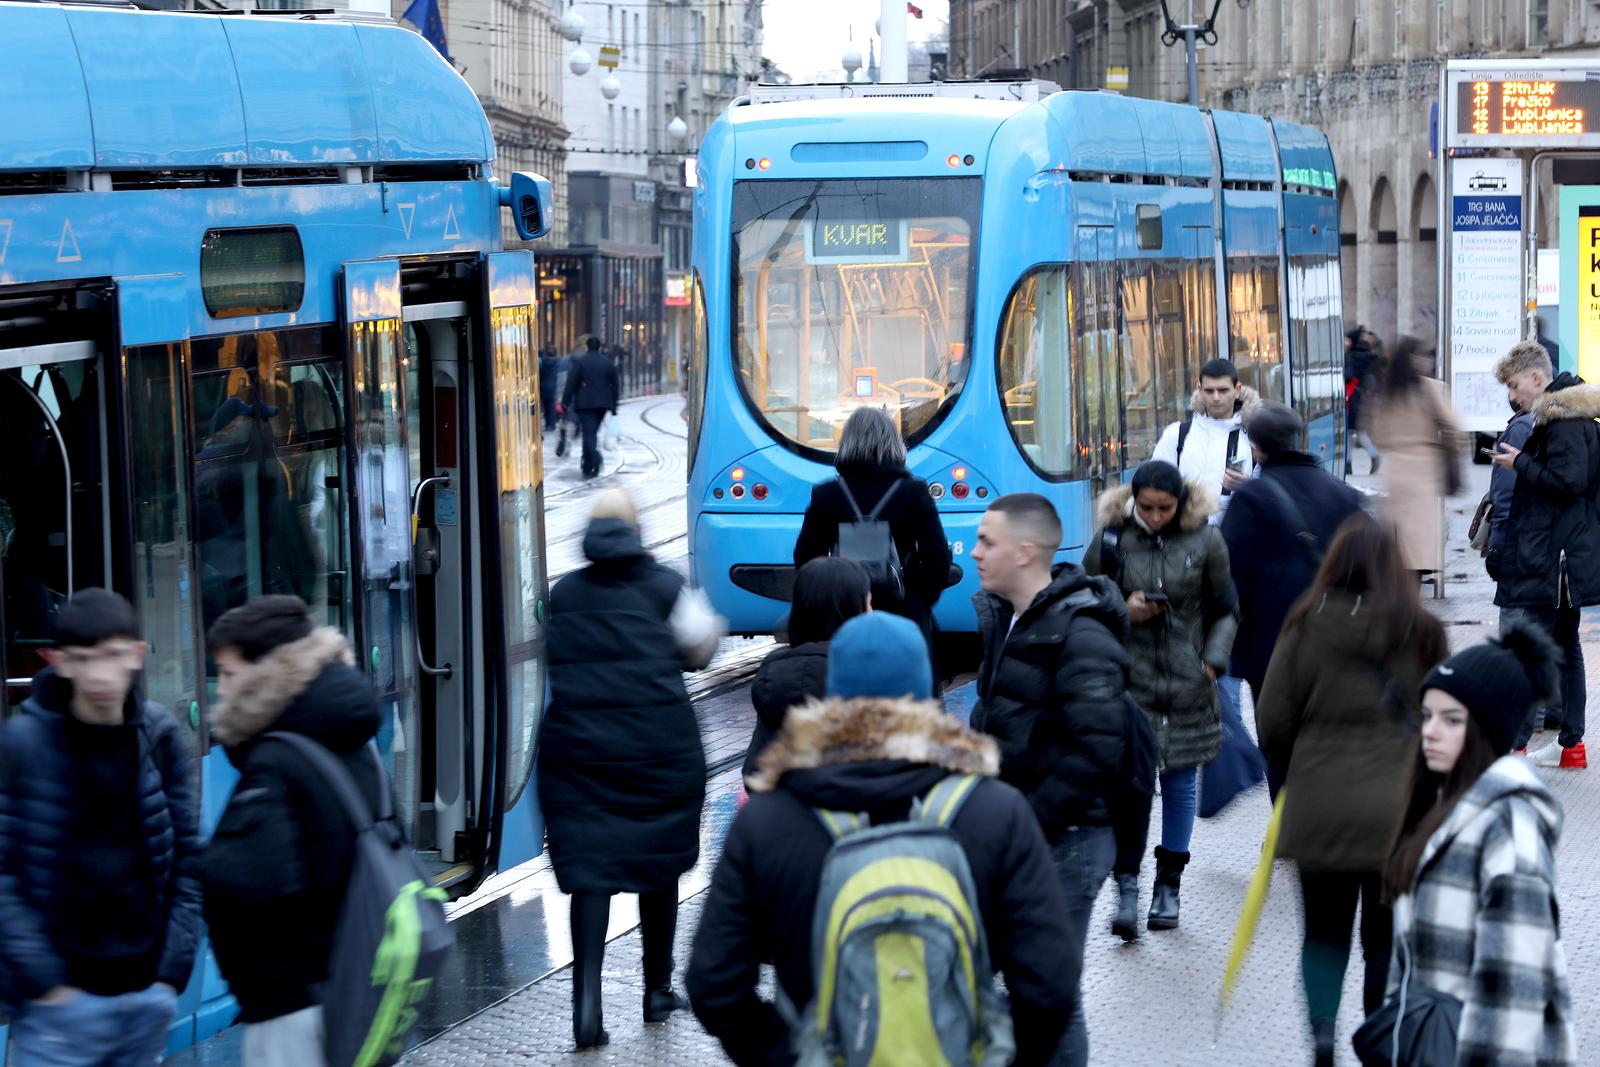 09.12.2022., Zagreb - Kvar tramvaja na istoku grada u jutarnjoj spici je izazvao zastoj, guzve i kasnjenja. Photo: Patrik Macek/PIXSELL